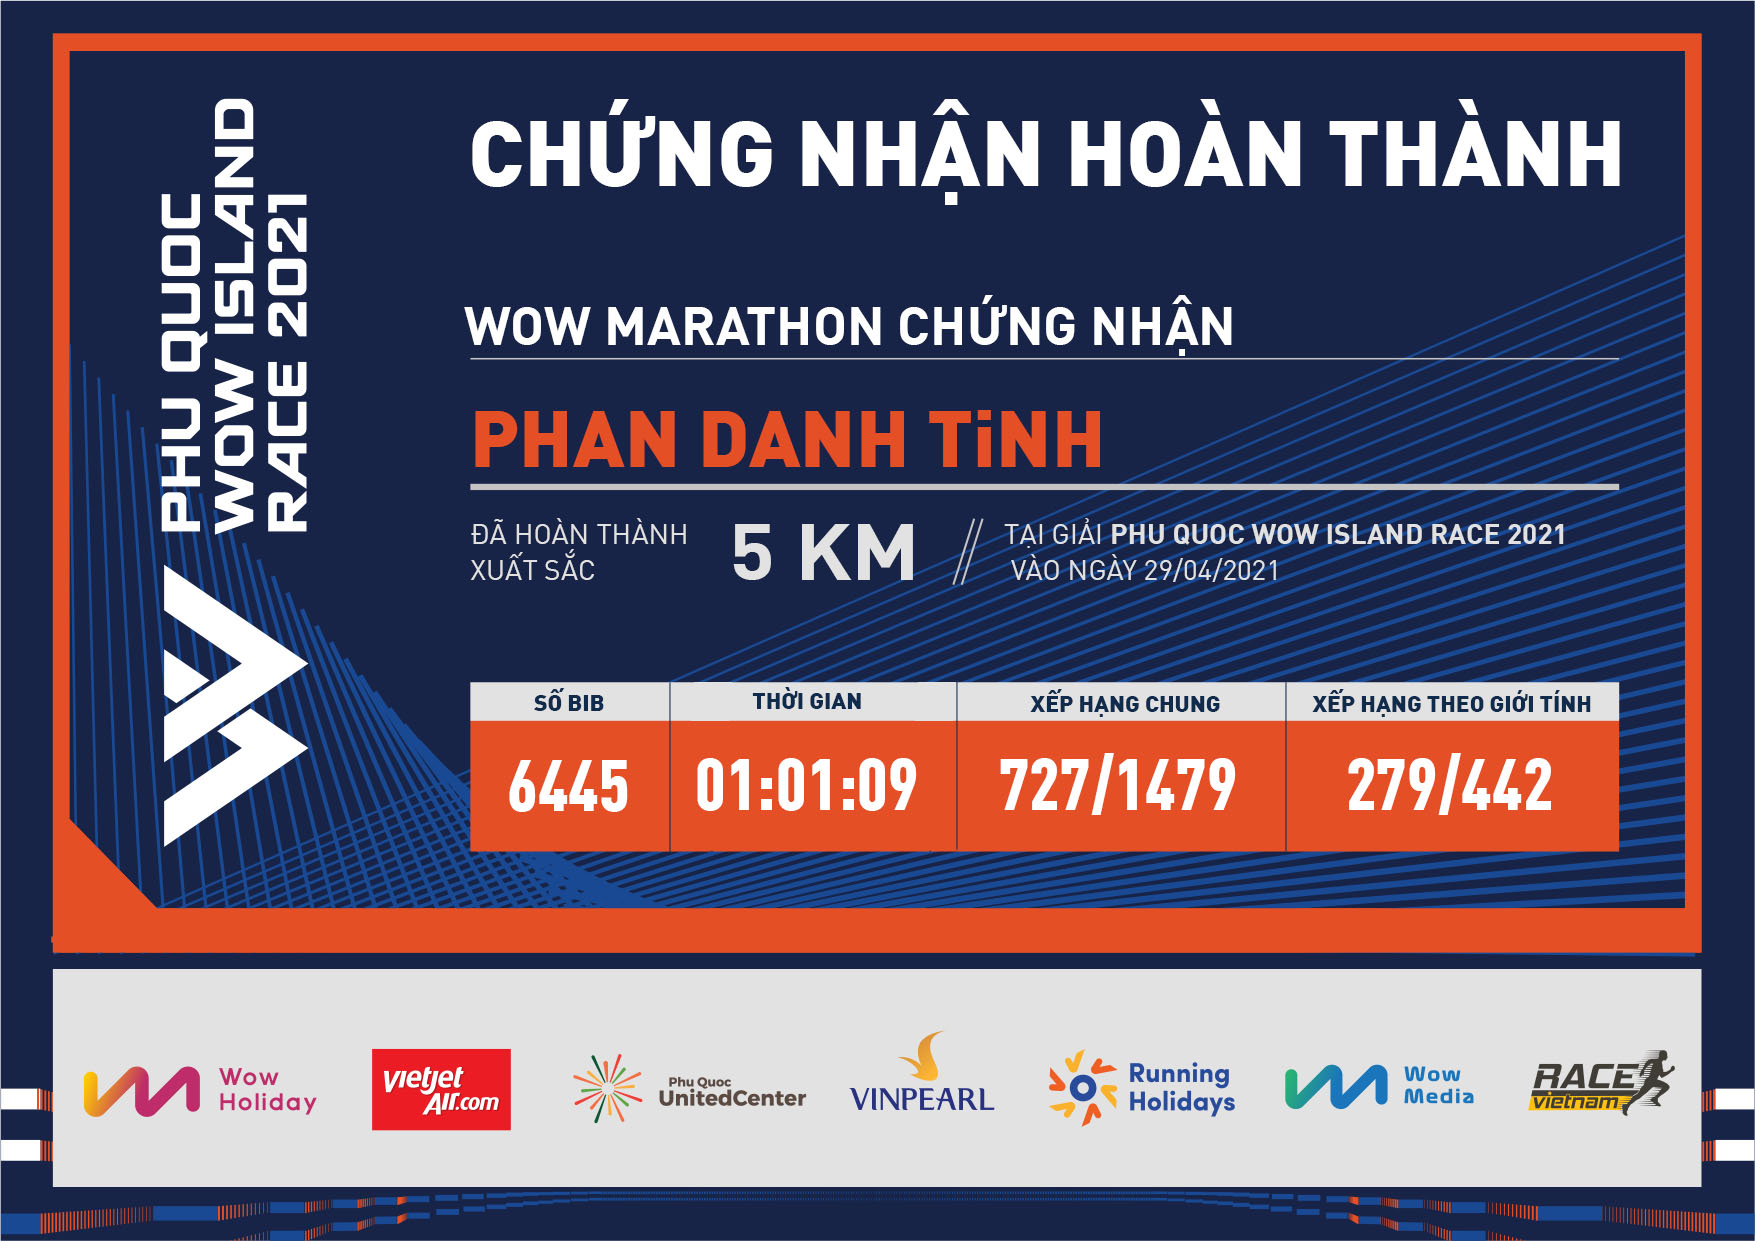 6445 - Phan Danh Tính